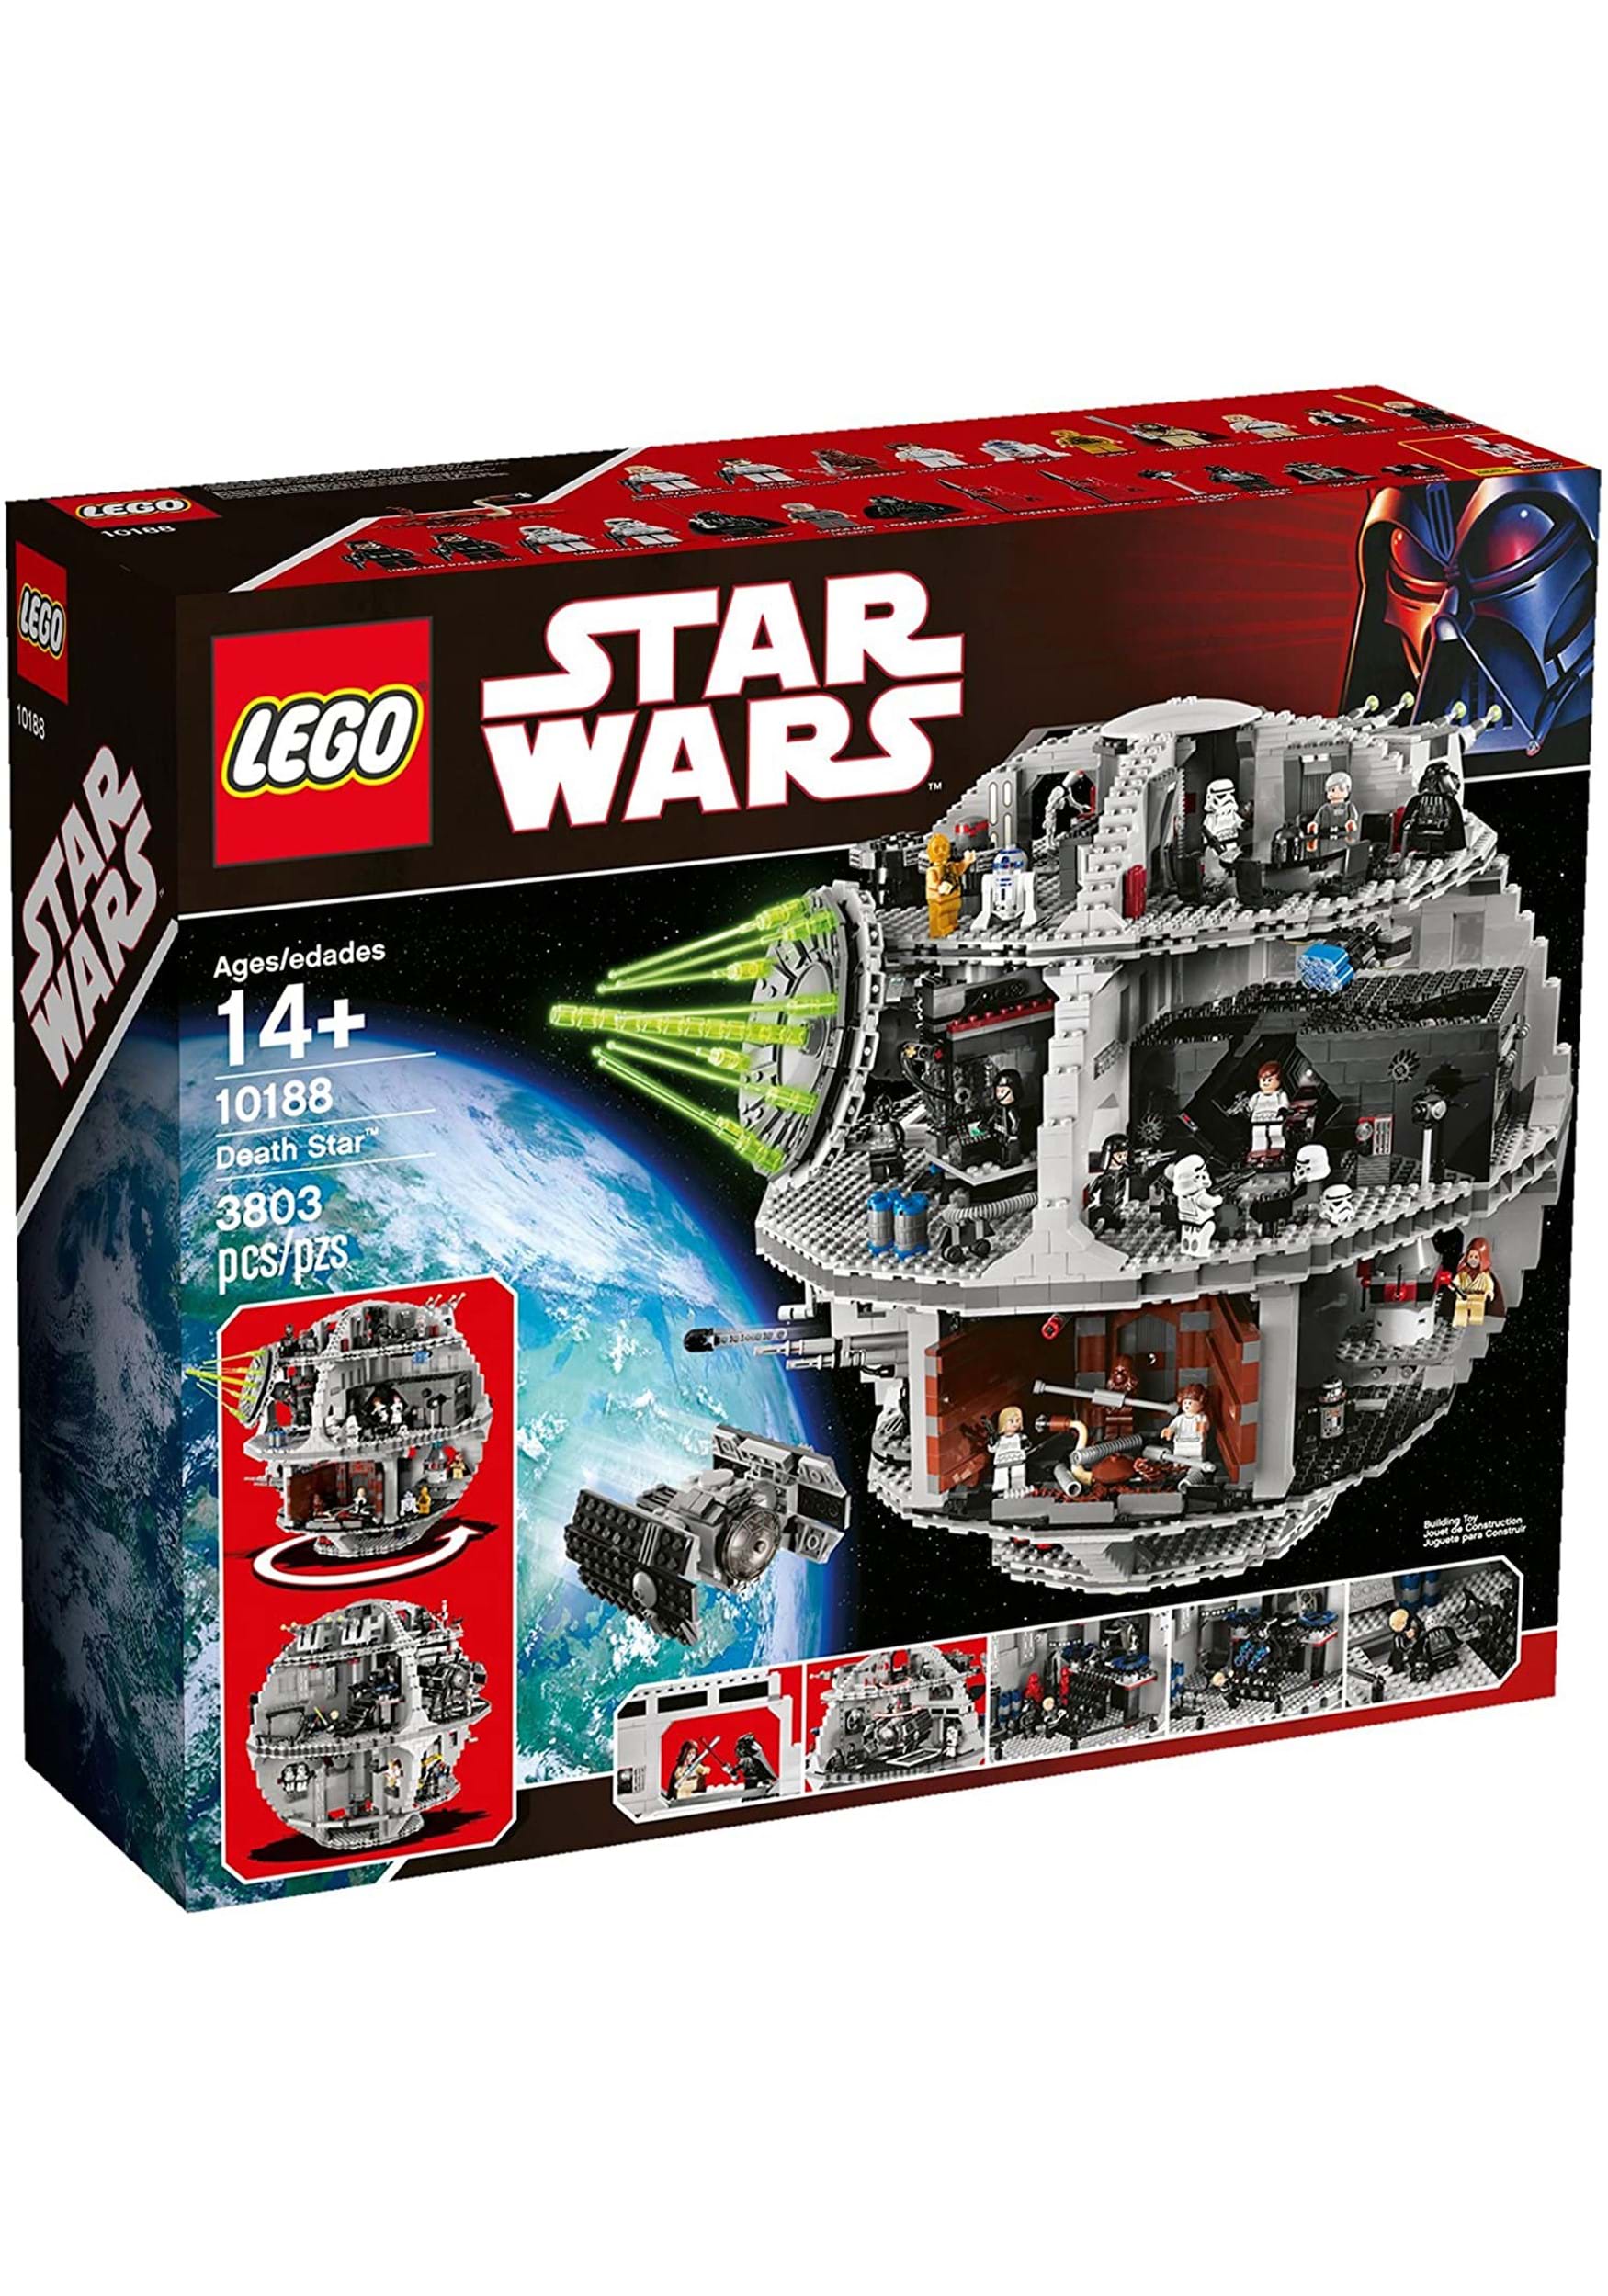 Lego Star Wars Death Star Set